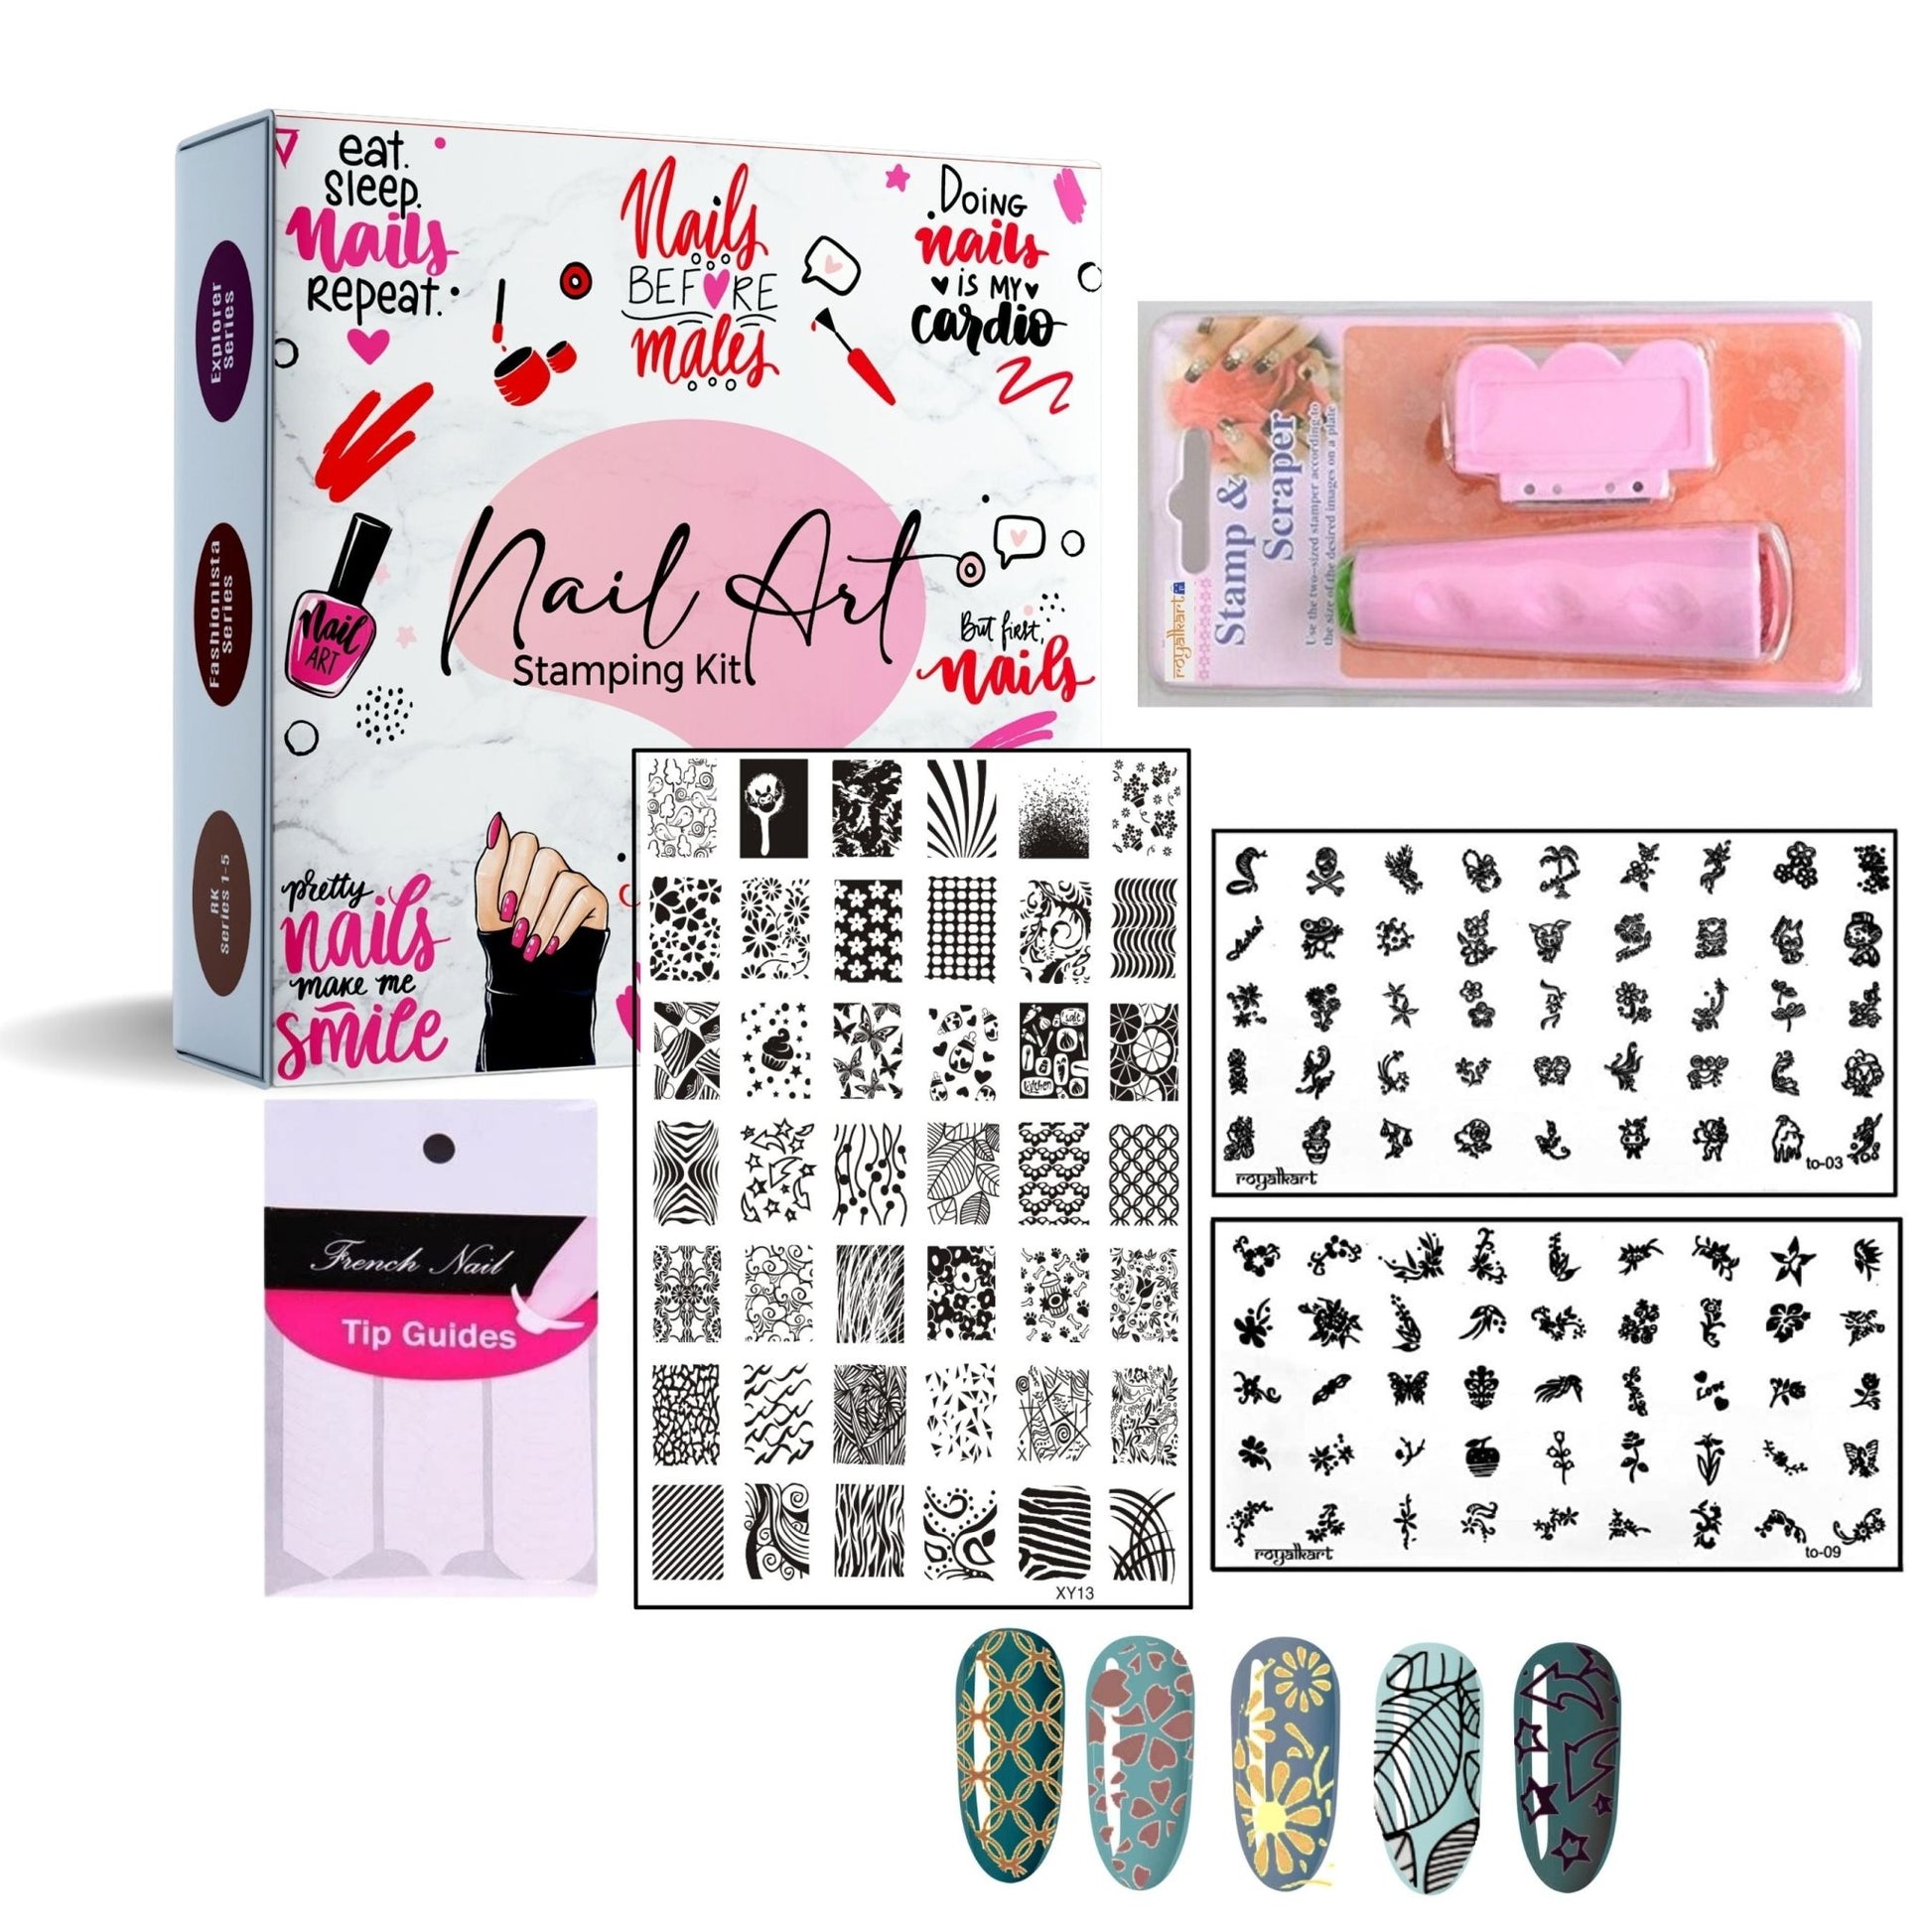 Nail Art Combo XY-13 with TO-09,03 Nail Art Combo- #Royalkart#nail art stamping kit